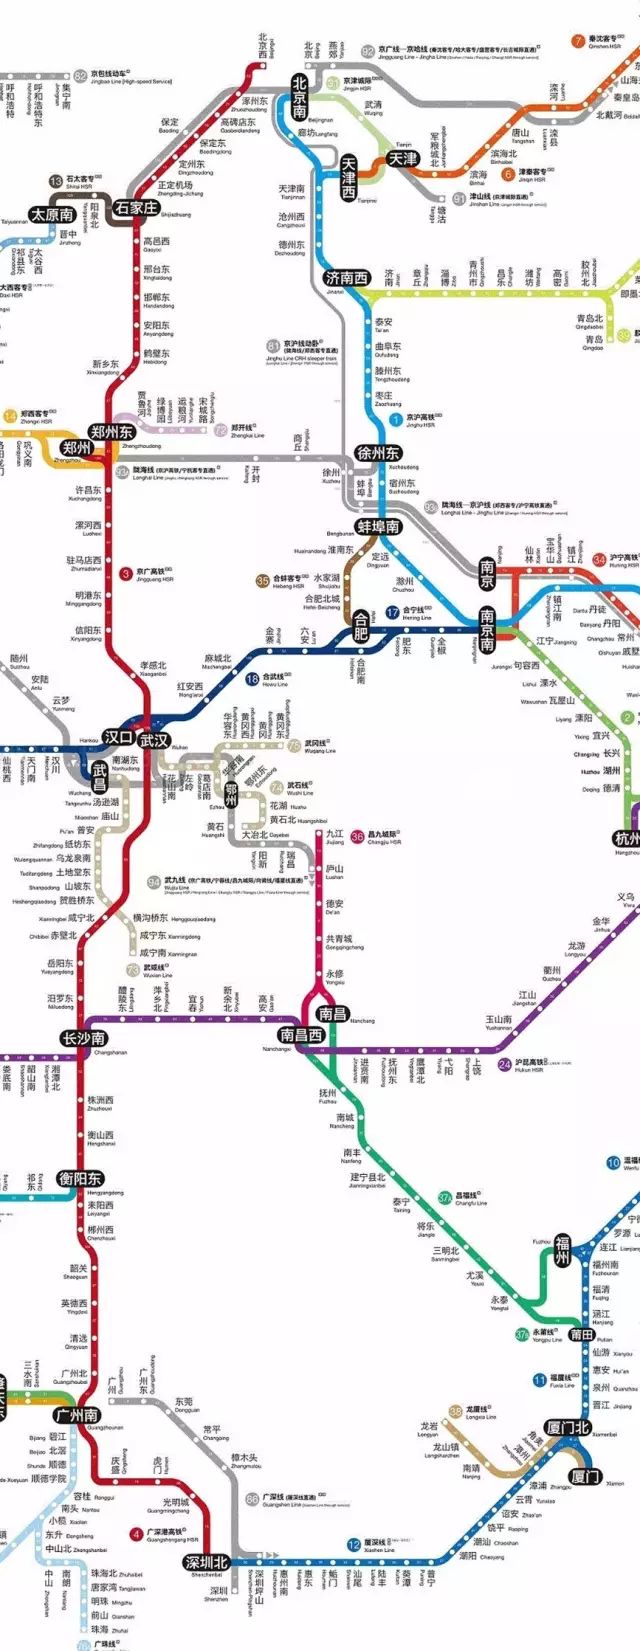 郑州 点击可看大图 5 思考之旅 如果你想火车上思考一下未来和人生 就